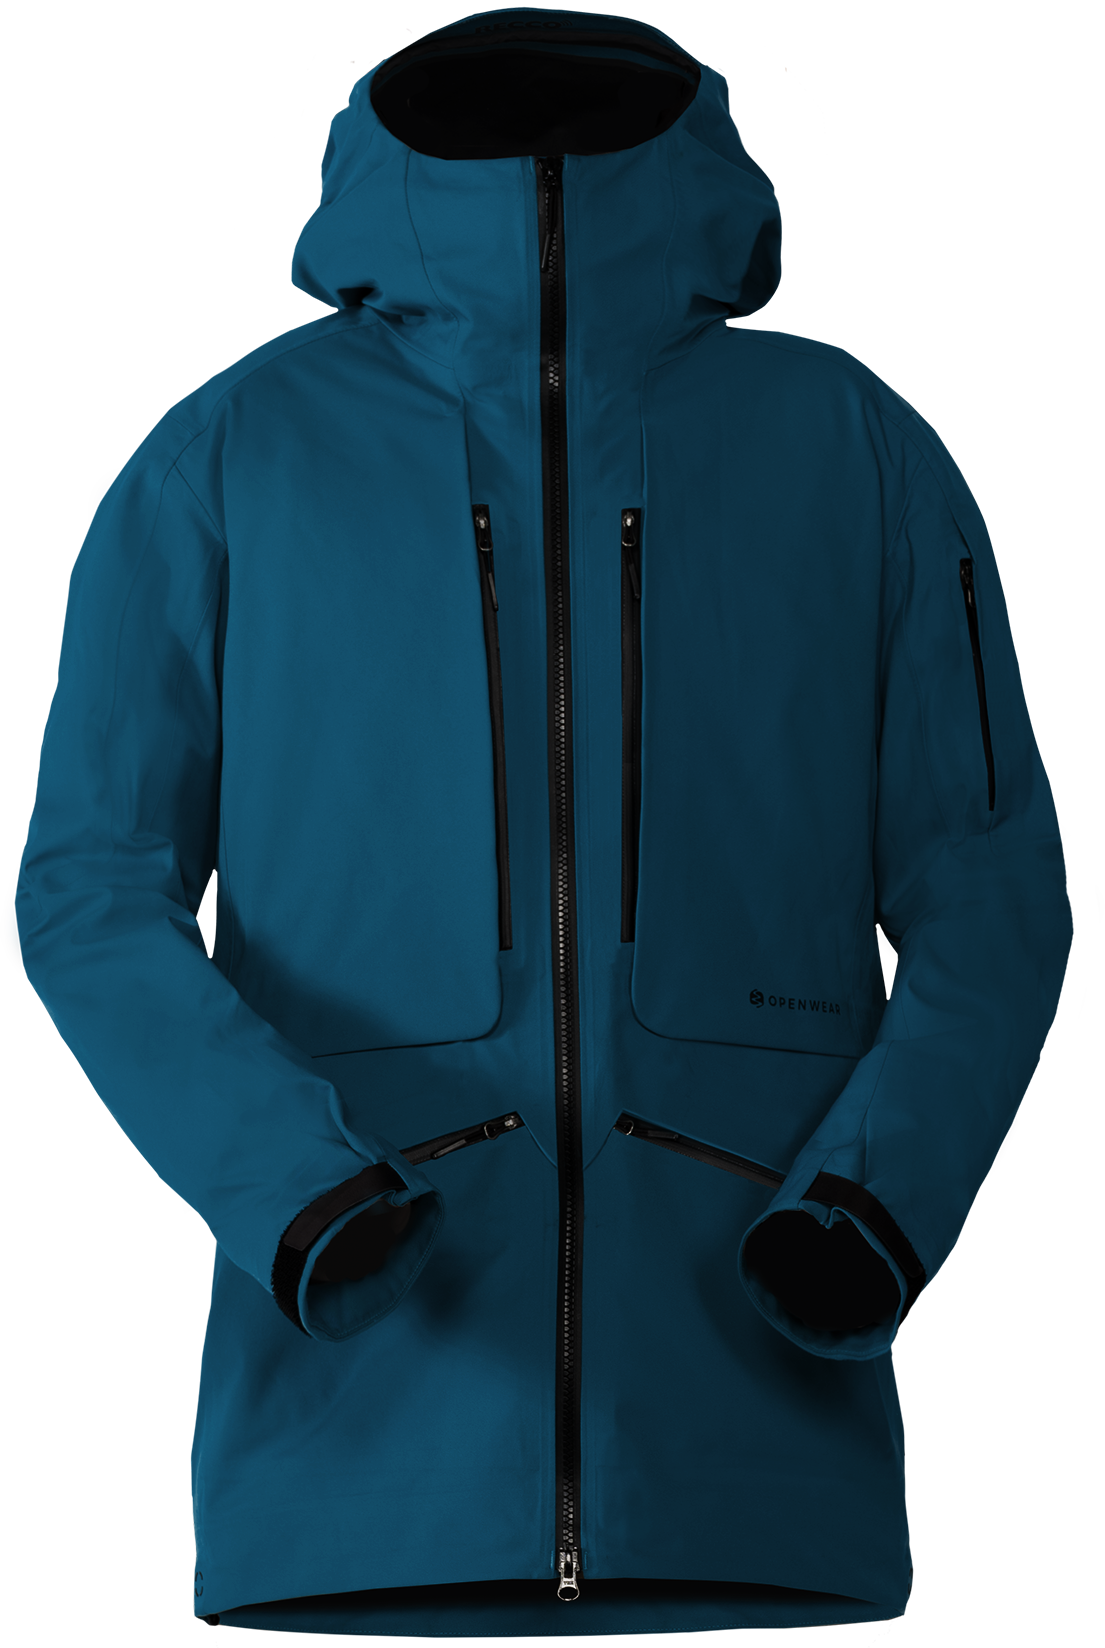 Imagens transparentes de jaqueta azul